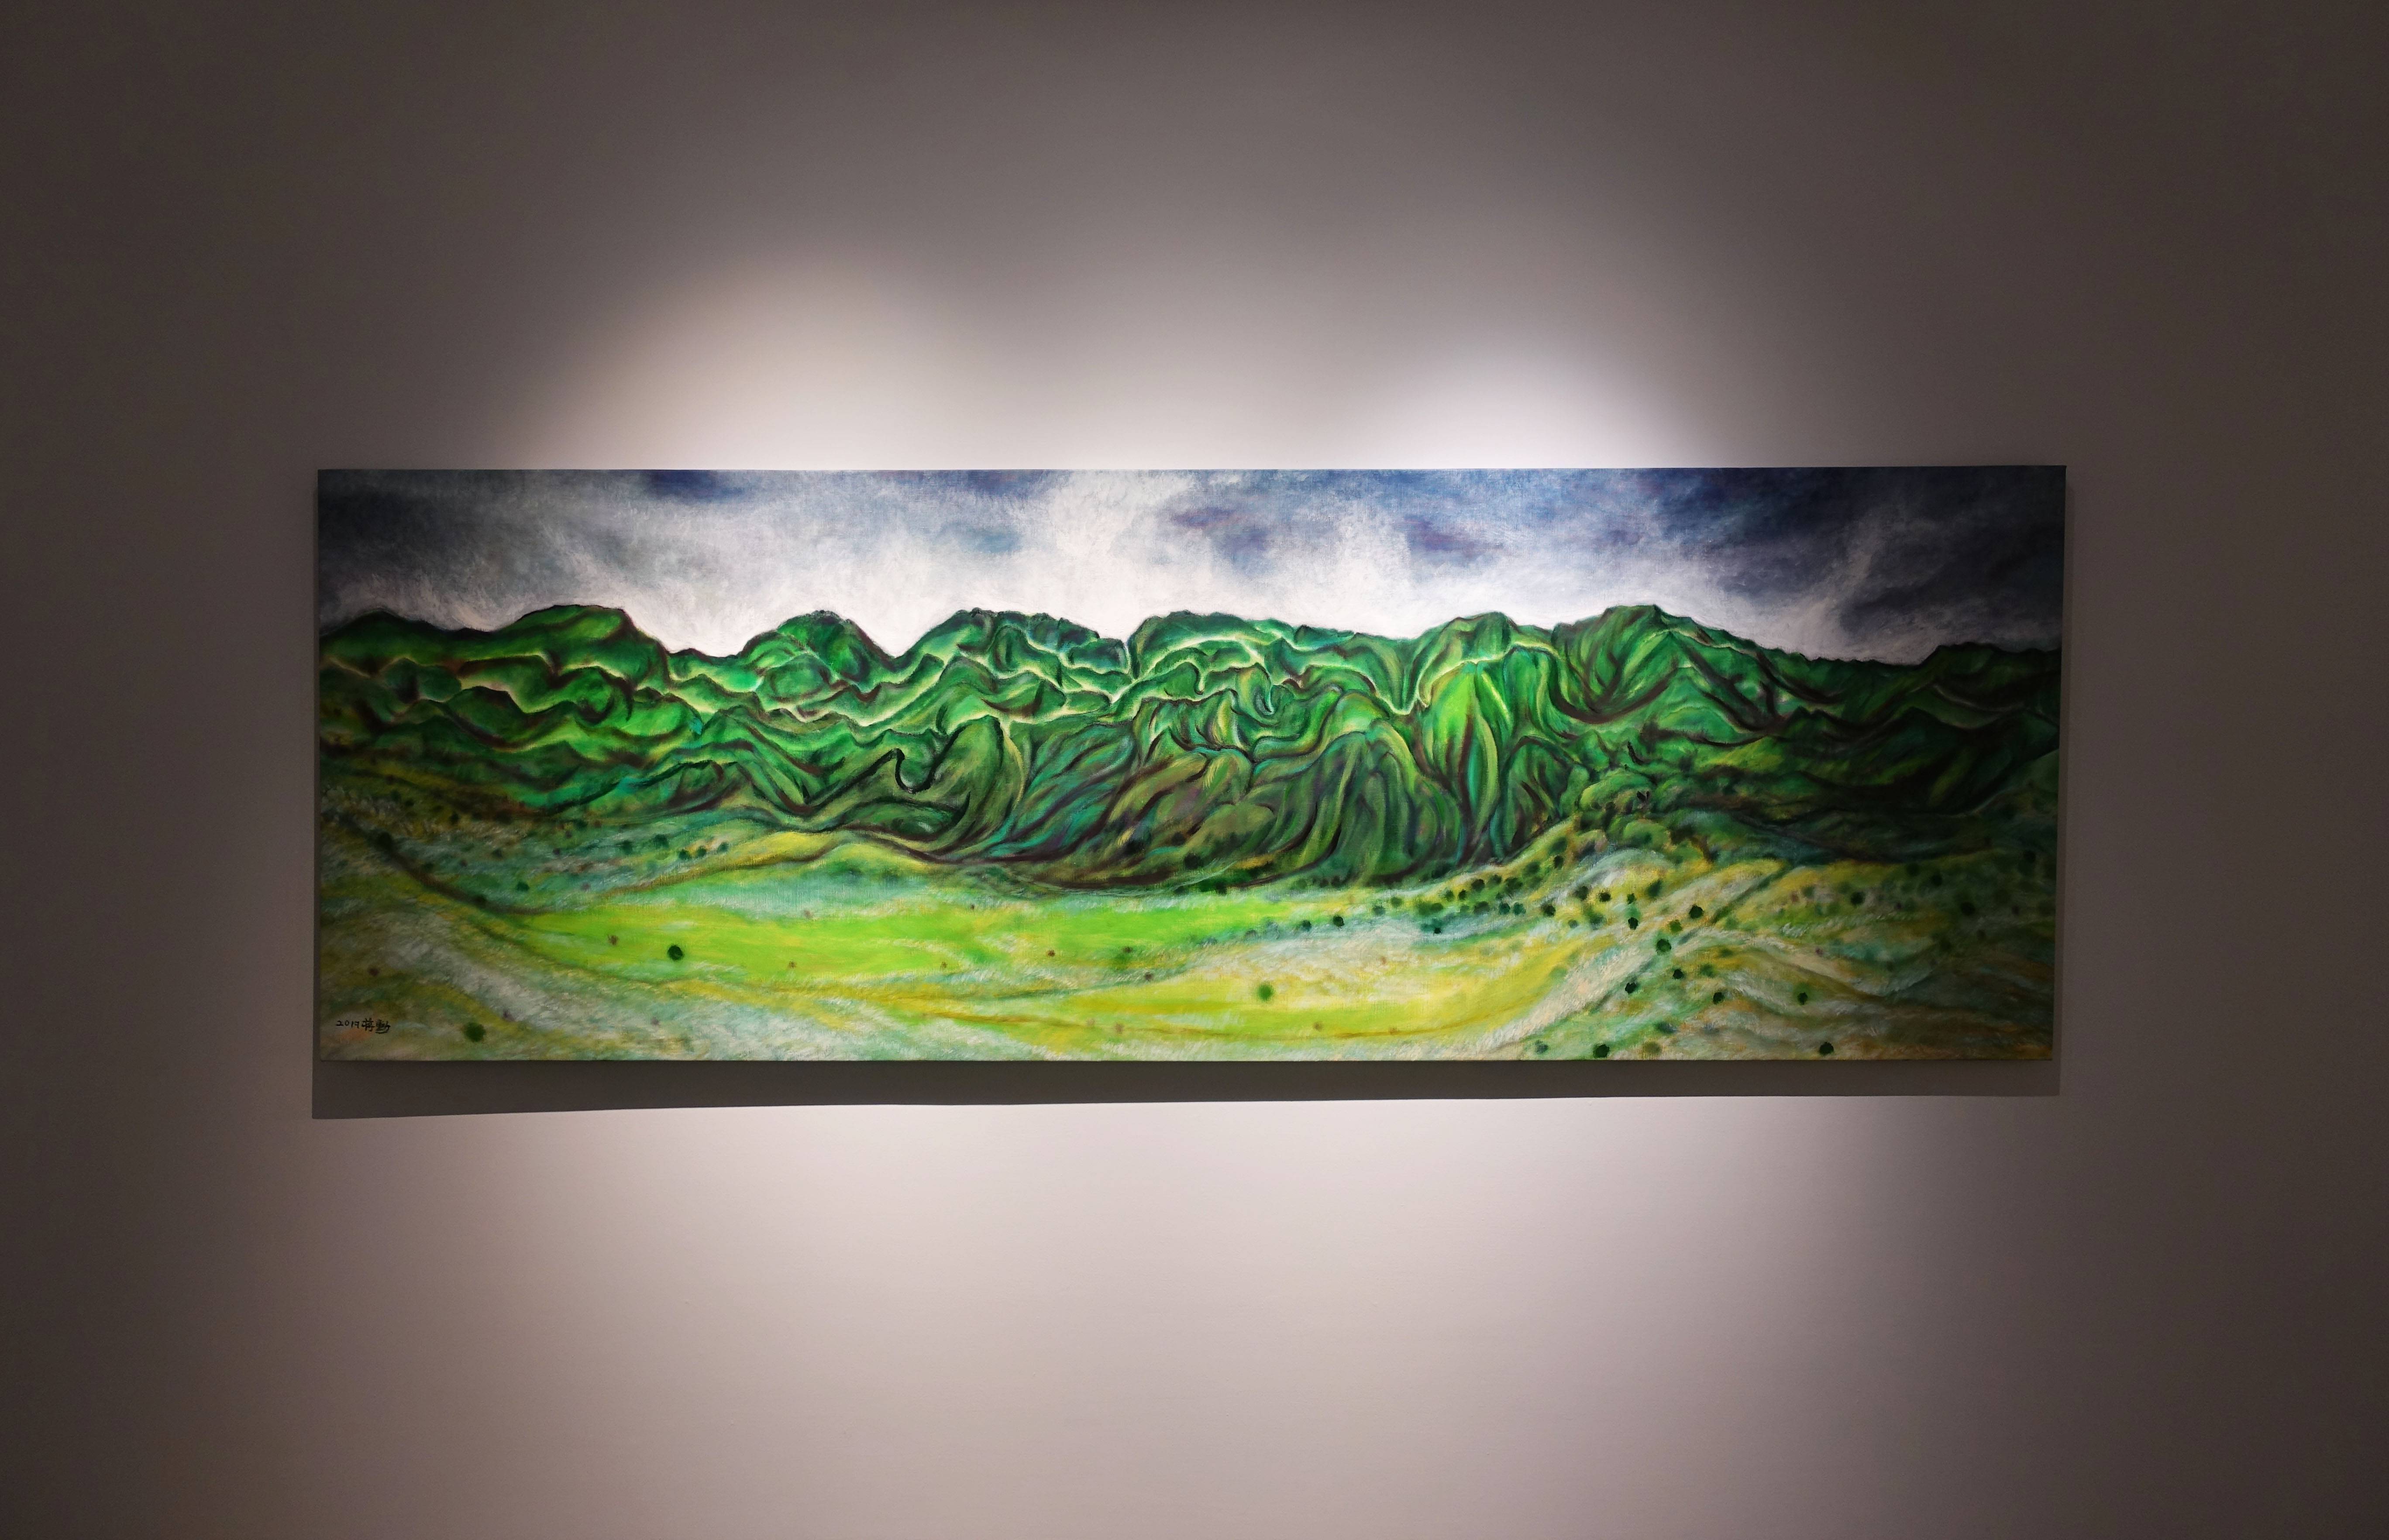 蔣勳，《縱谷之秋》，油彩畫布，92x270cm，2017。